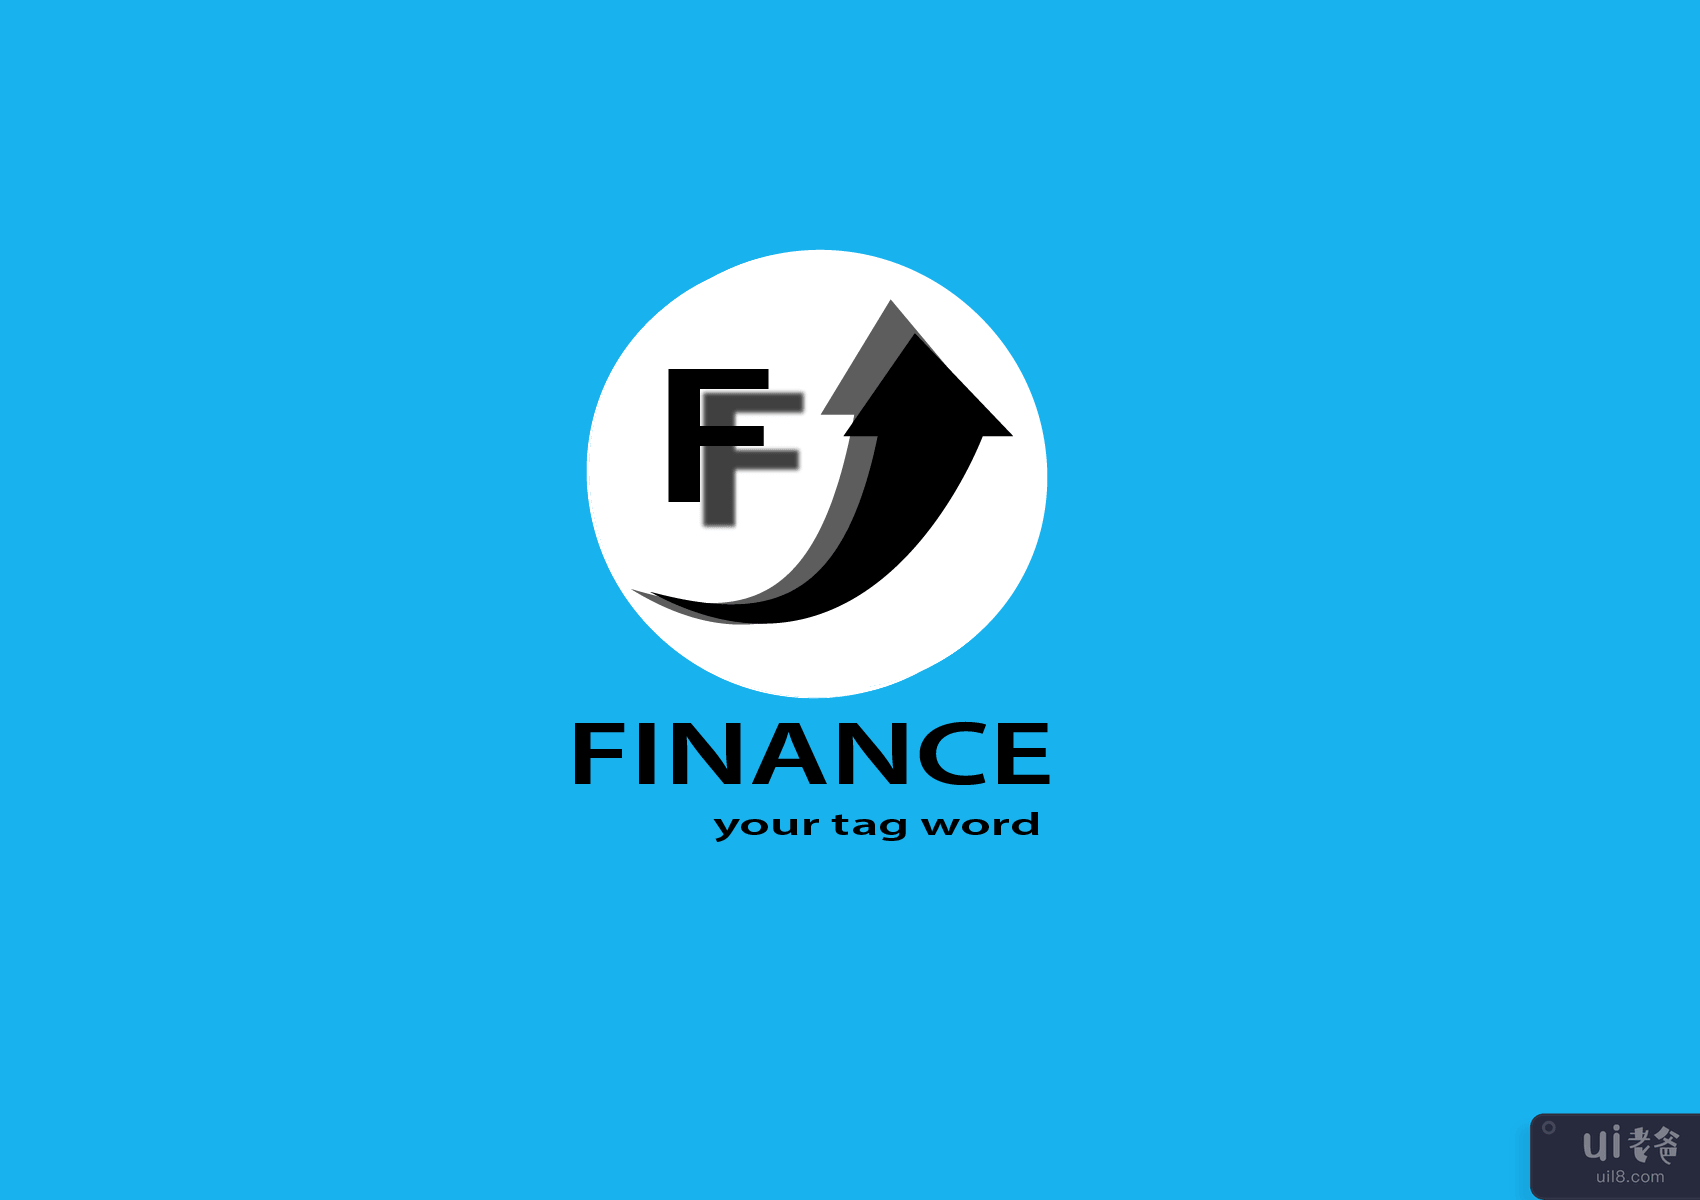 企业财务标志模板(Corporate Finance logo Template)插图3